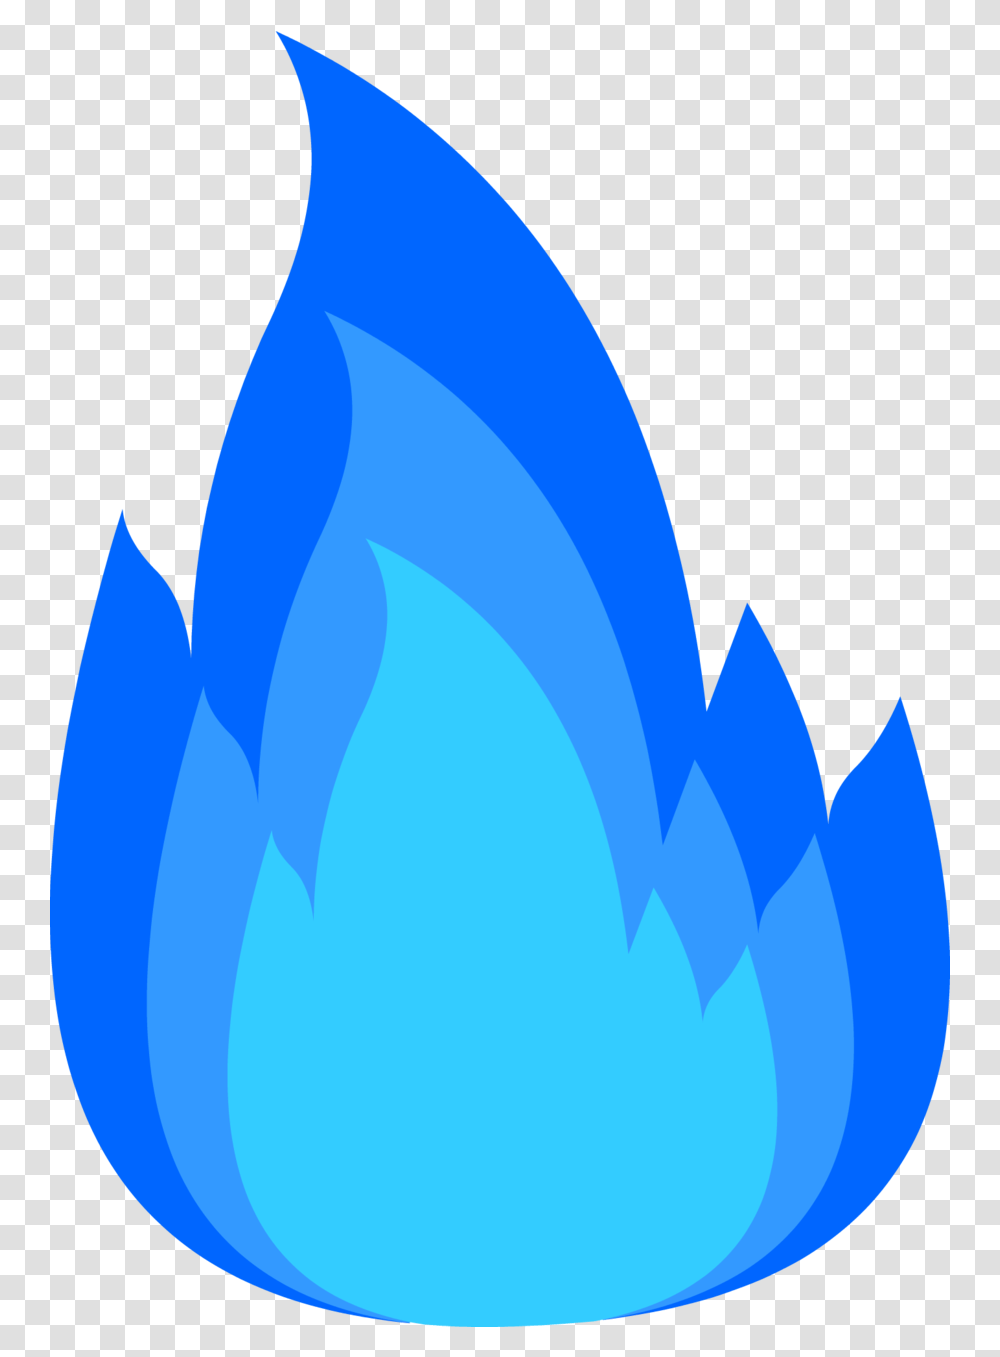 Blue Fire Icon Cartoon Blue Fire, Blue Jay, Bird, Animal, Bluebird Transparent Png